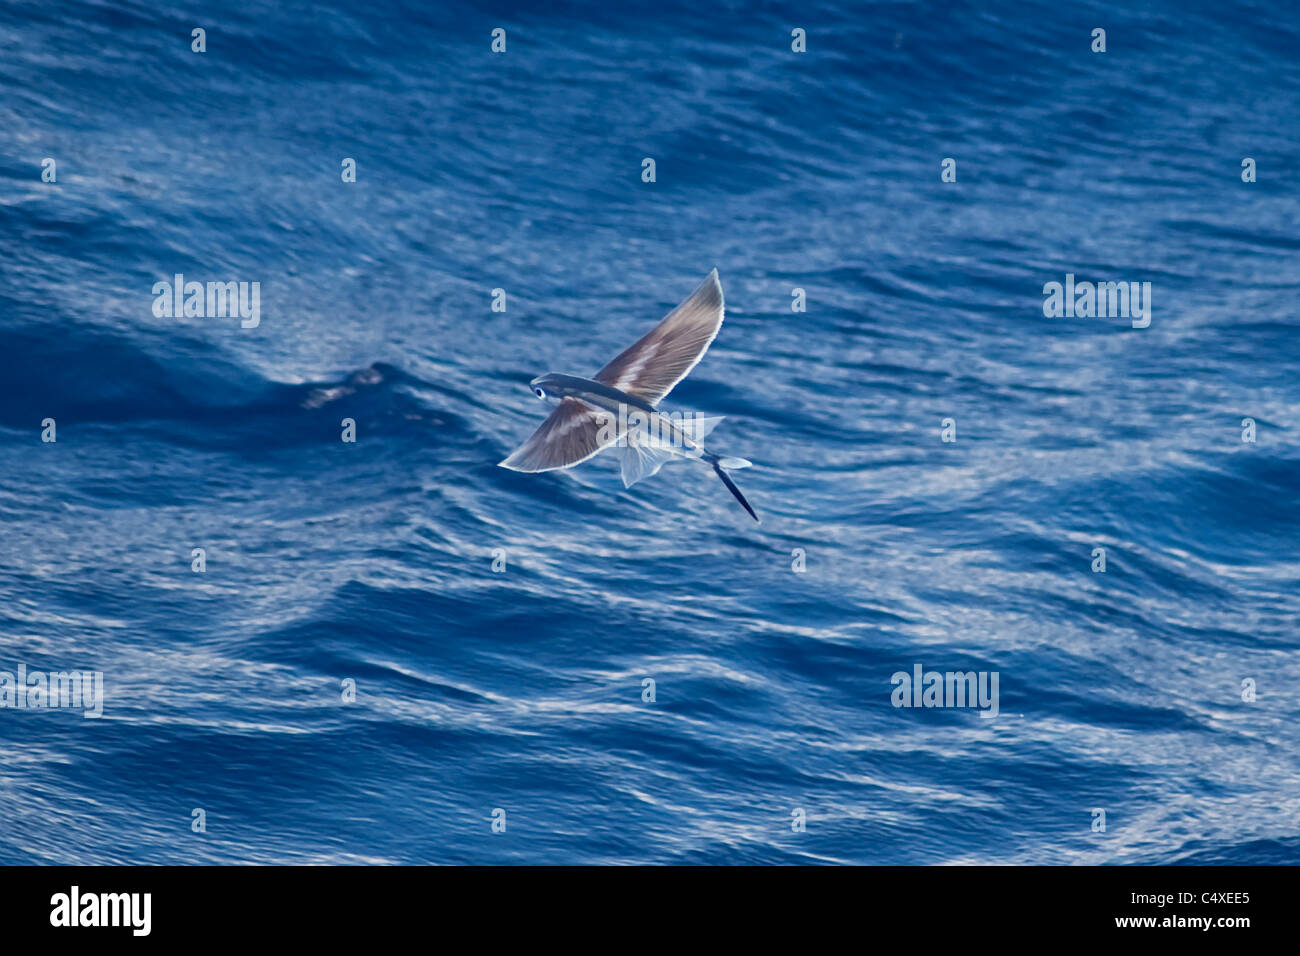 Les espèces de poissons volants (nom scientifique inconnu) rare rare de droit, à la mi-air. Océan Atlantique Sud. Banque D'Images